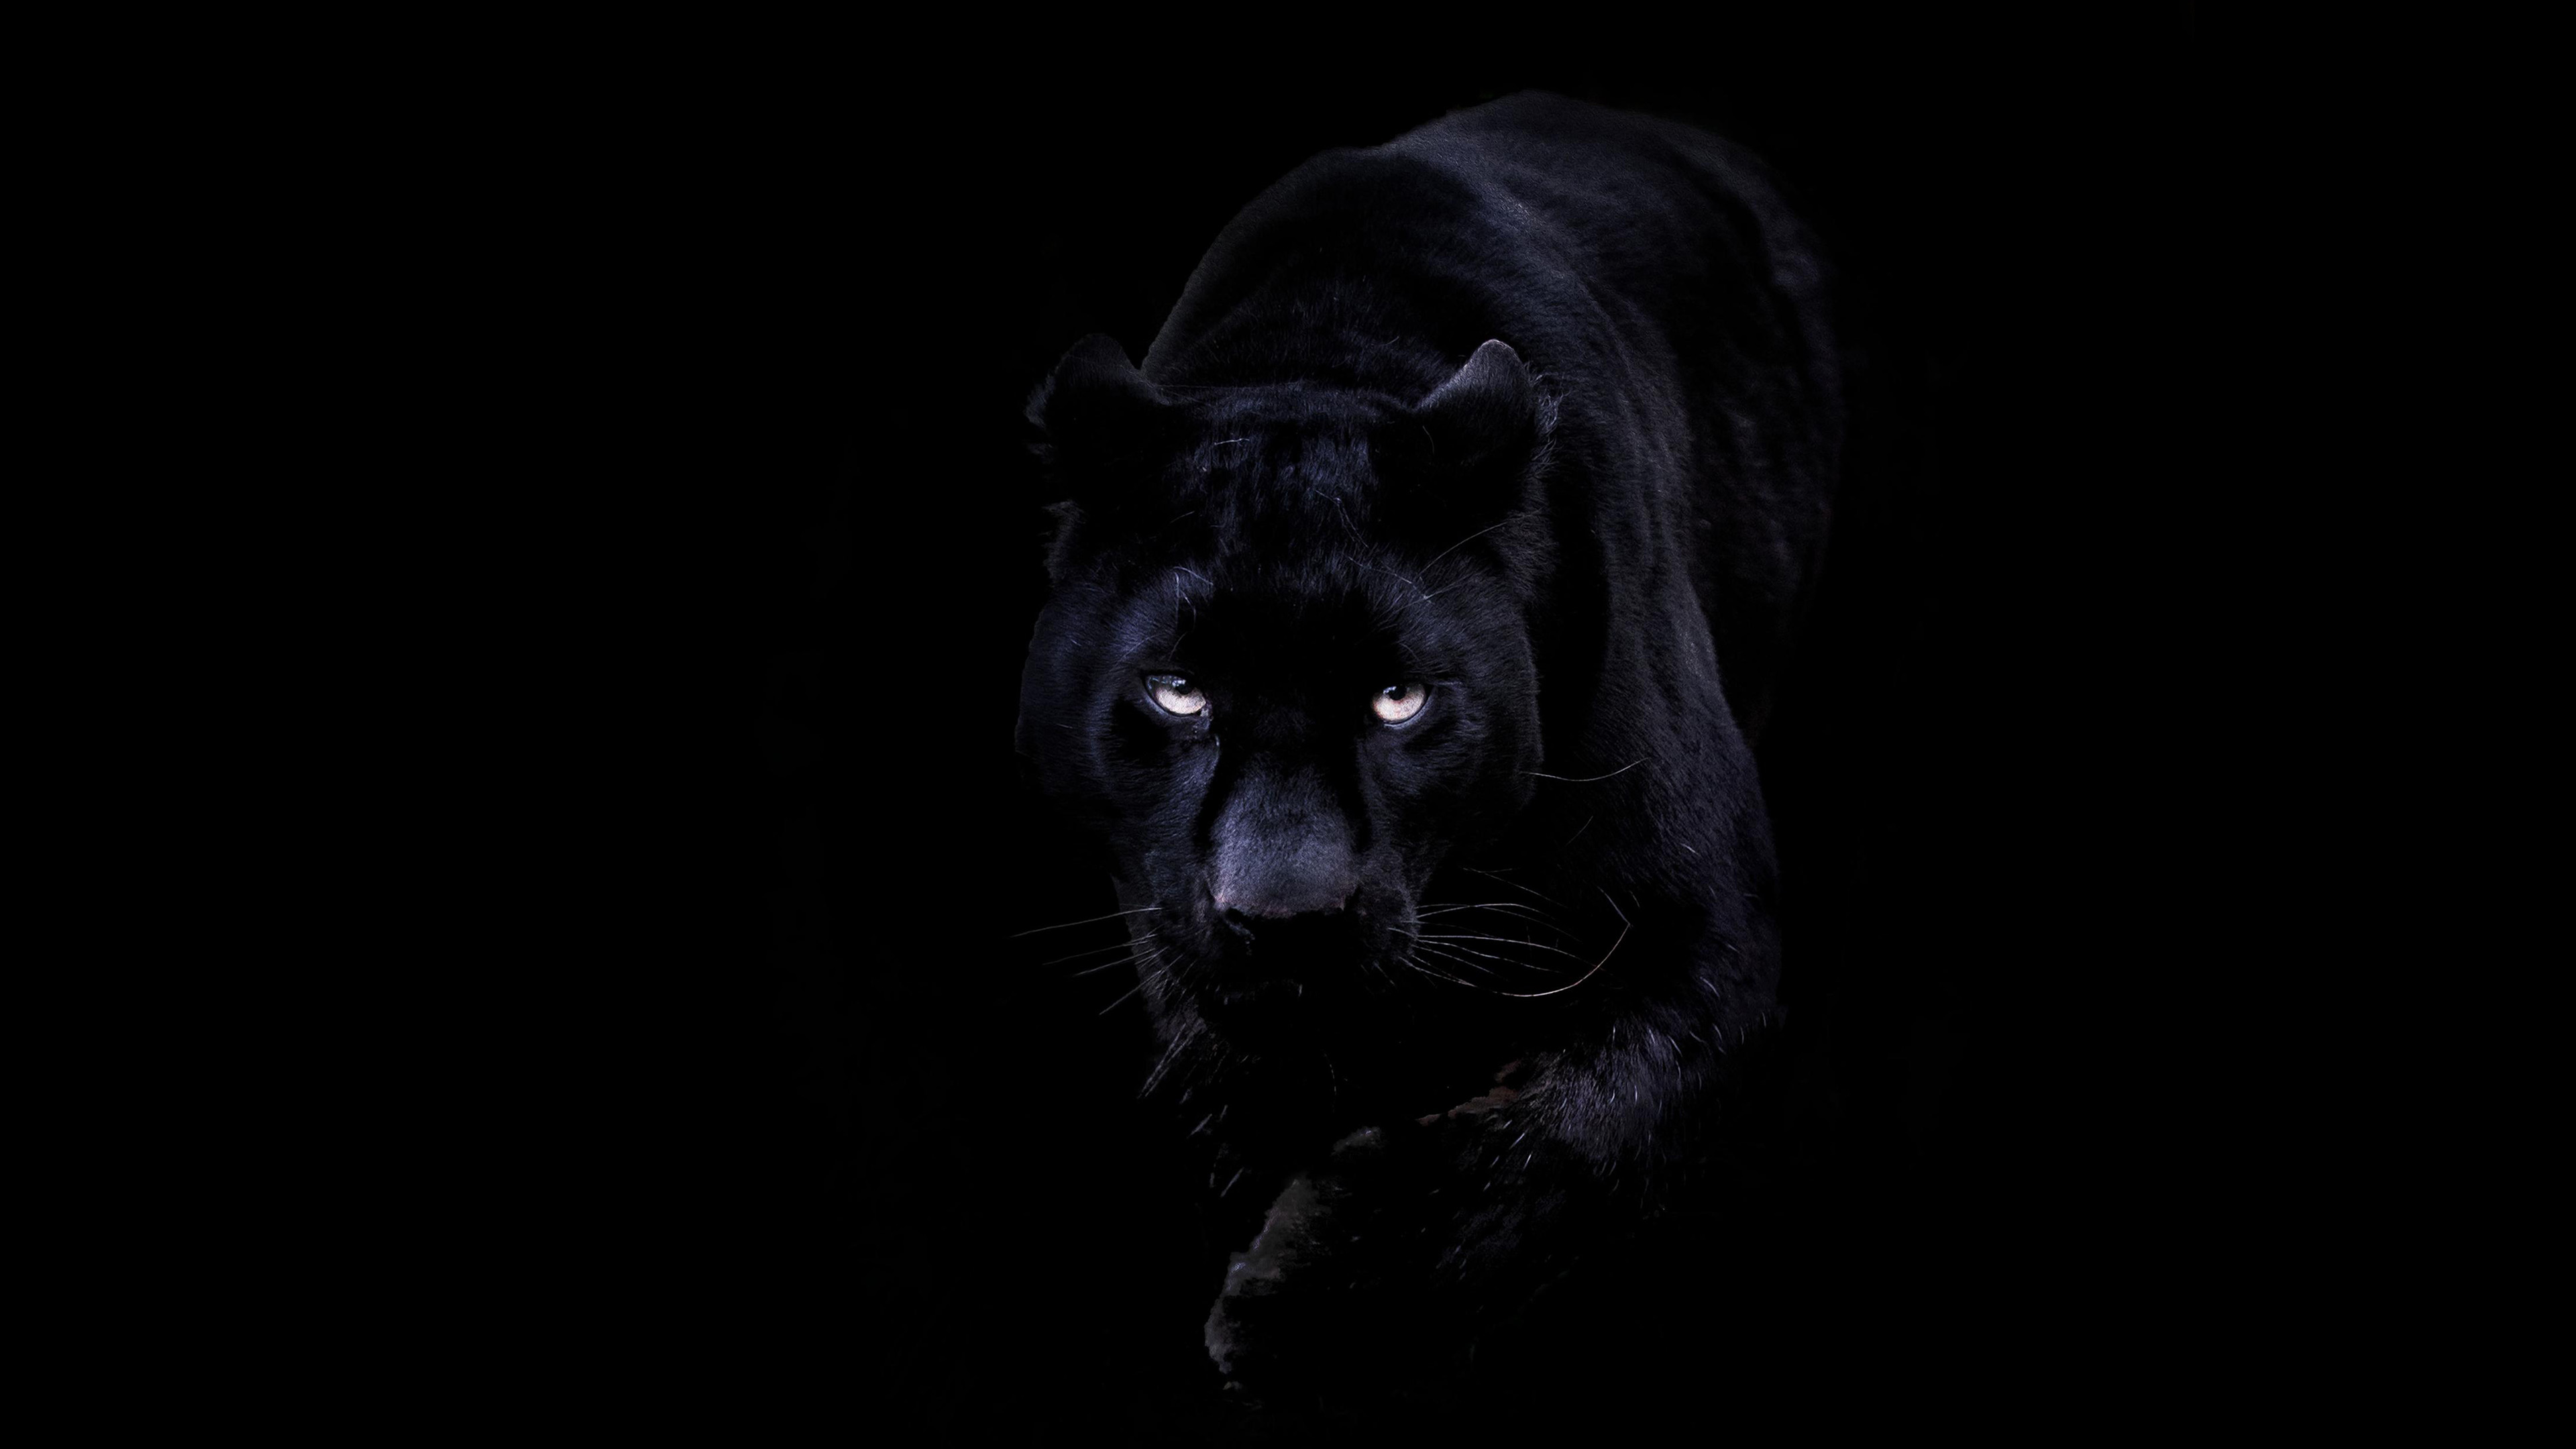 wallpaper for desktop, laptop. animal dark black pahter art illustration